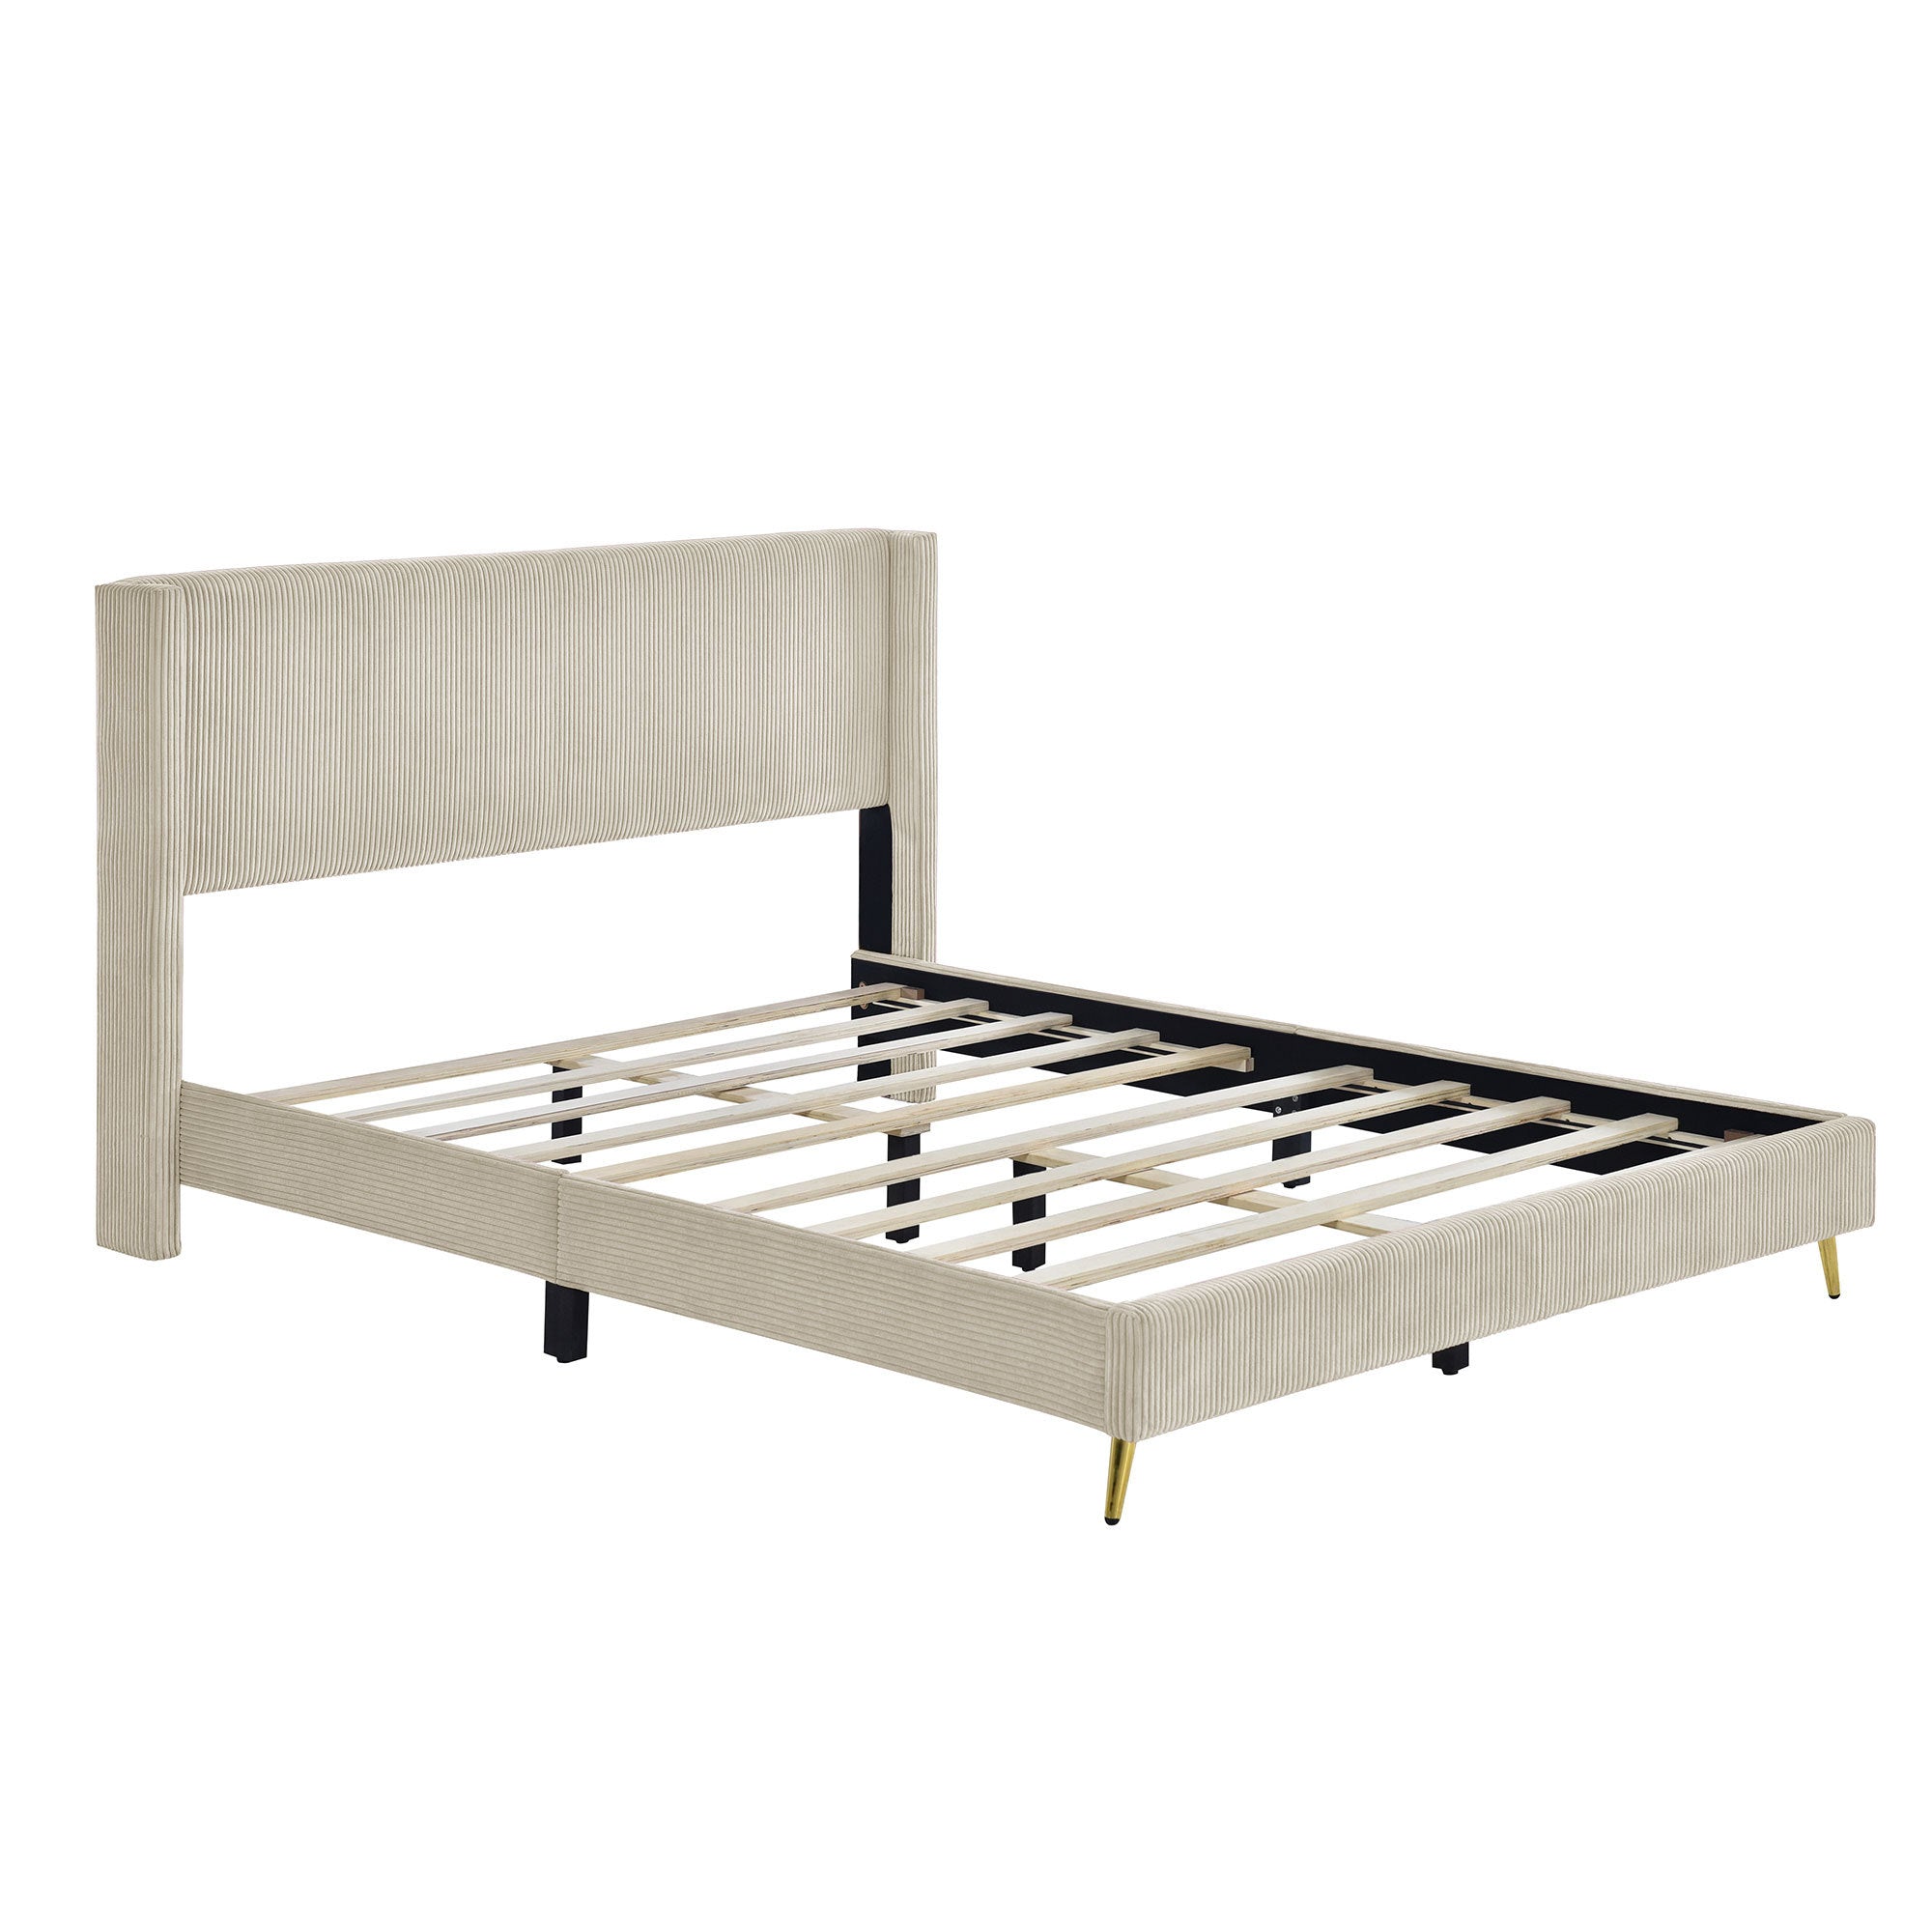 Queen Size Corduroy Platform Bed with Metal Legs, beige-corduroy